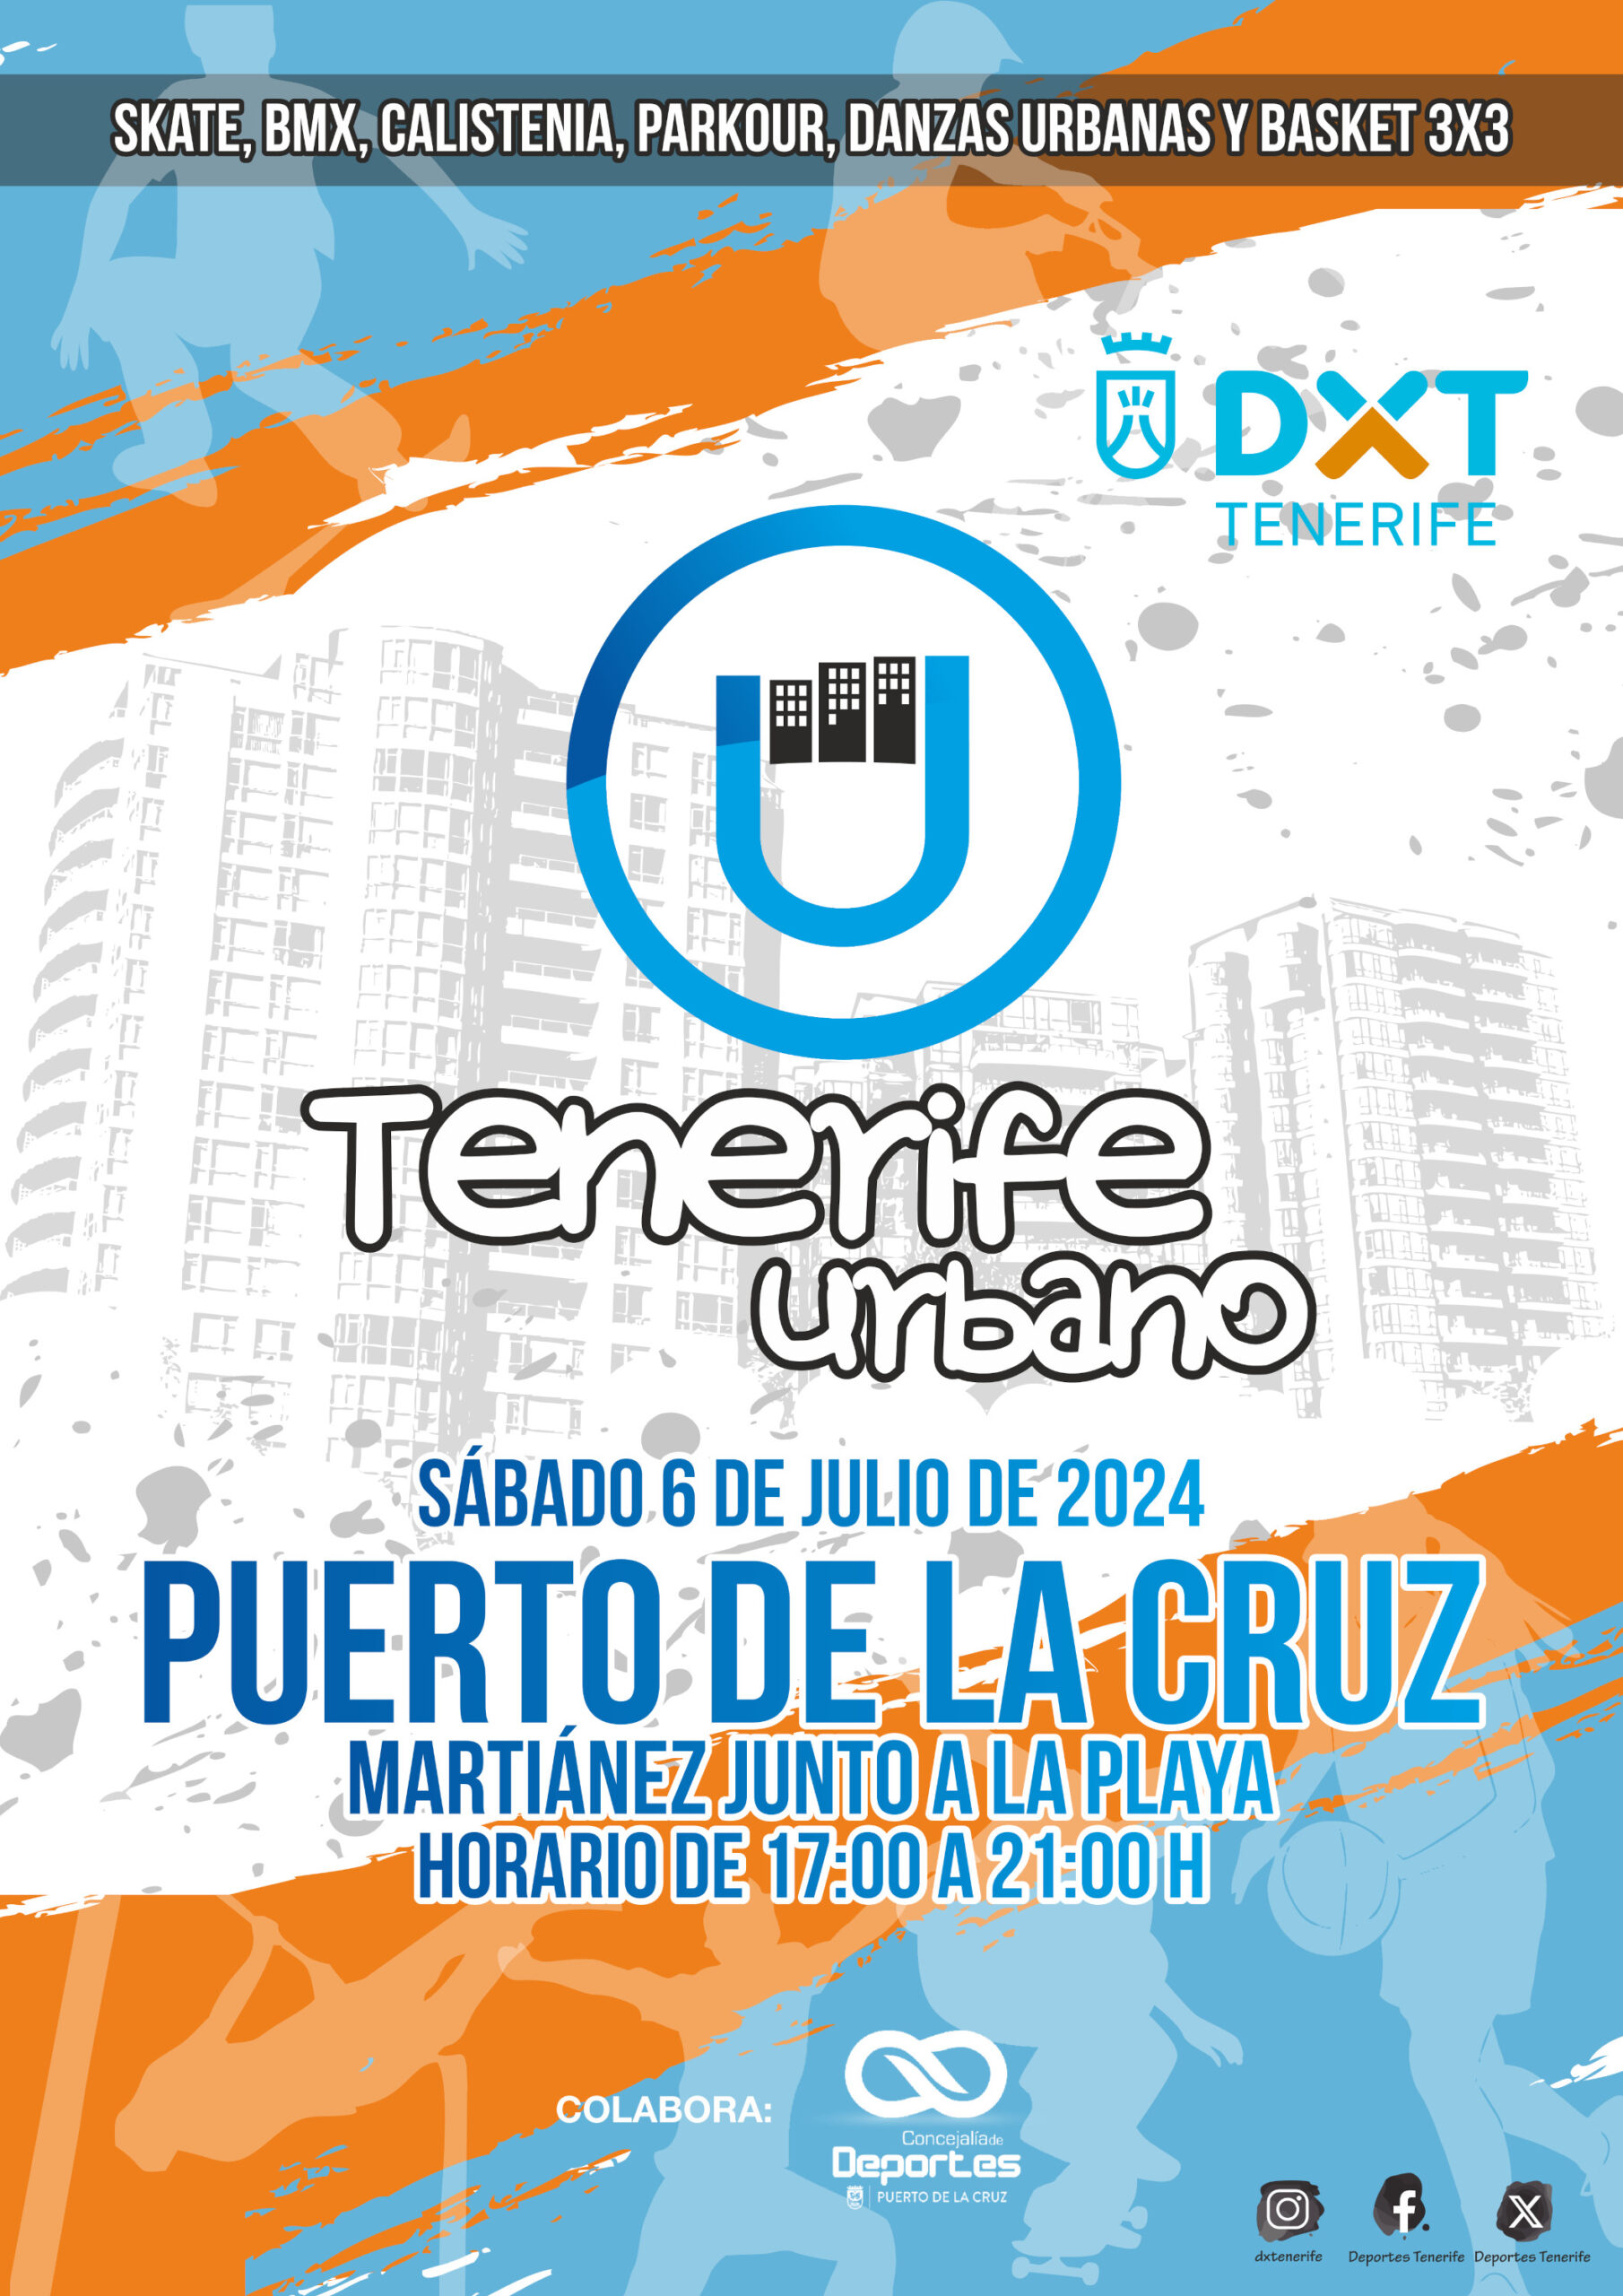 Encuentro Tenerife Urbano 2024 en Puerto de la Cruz